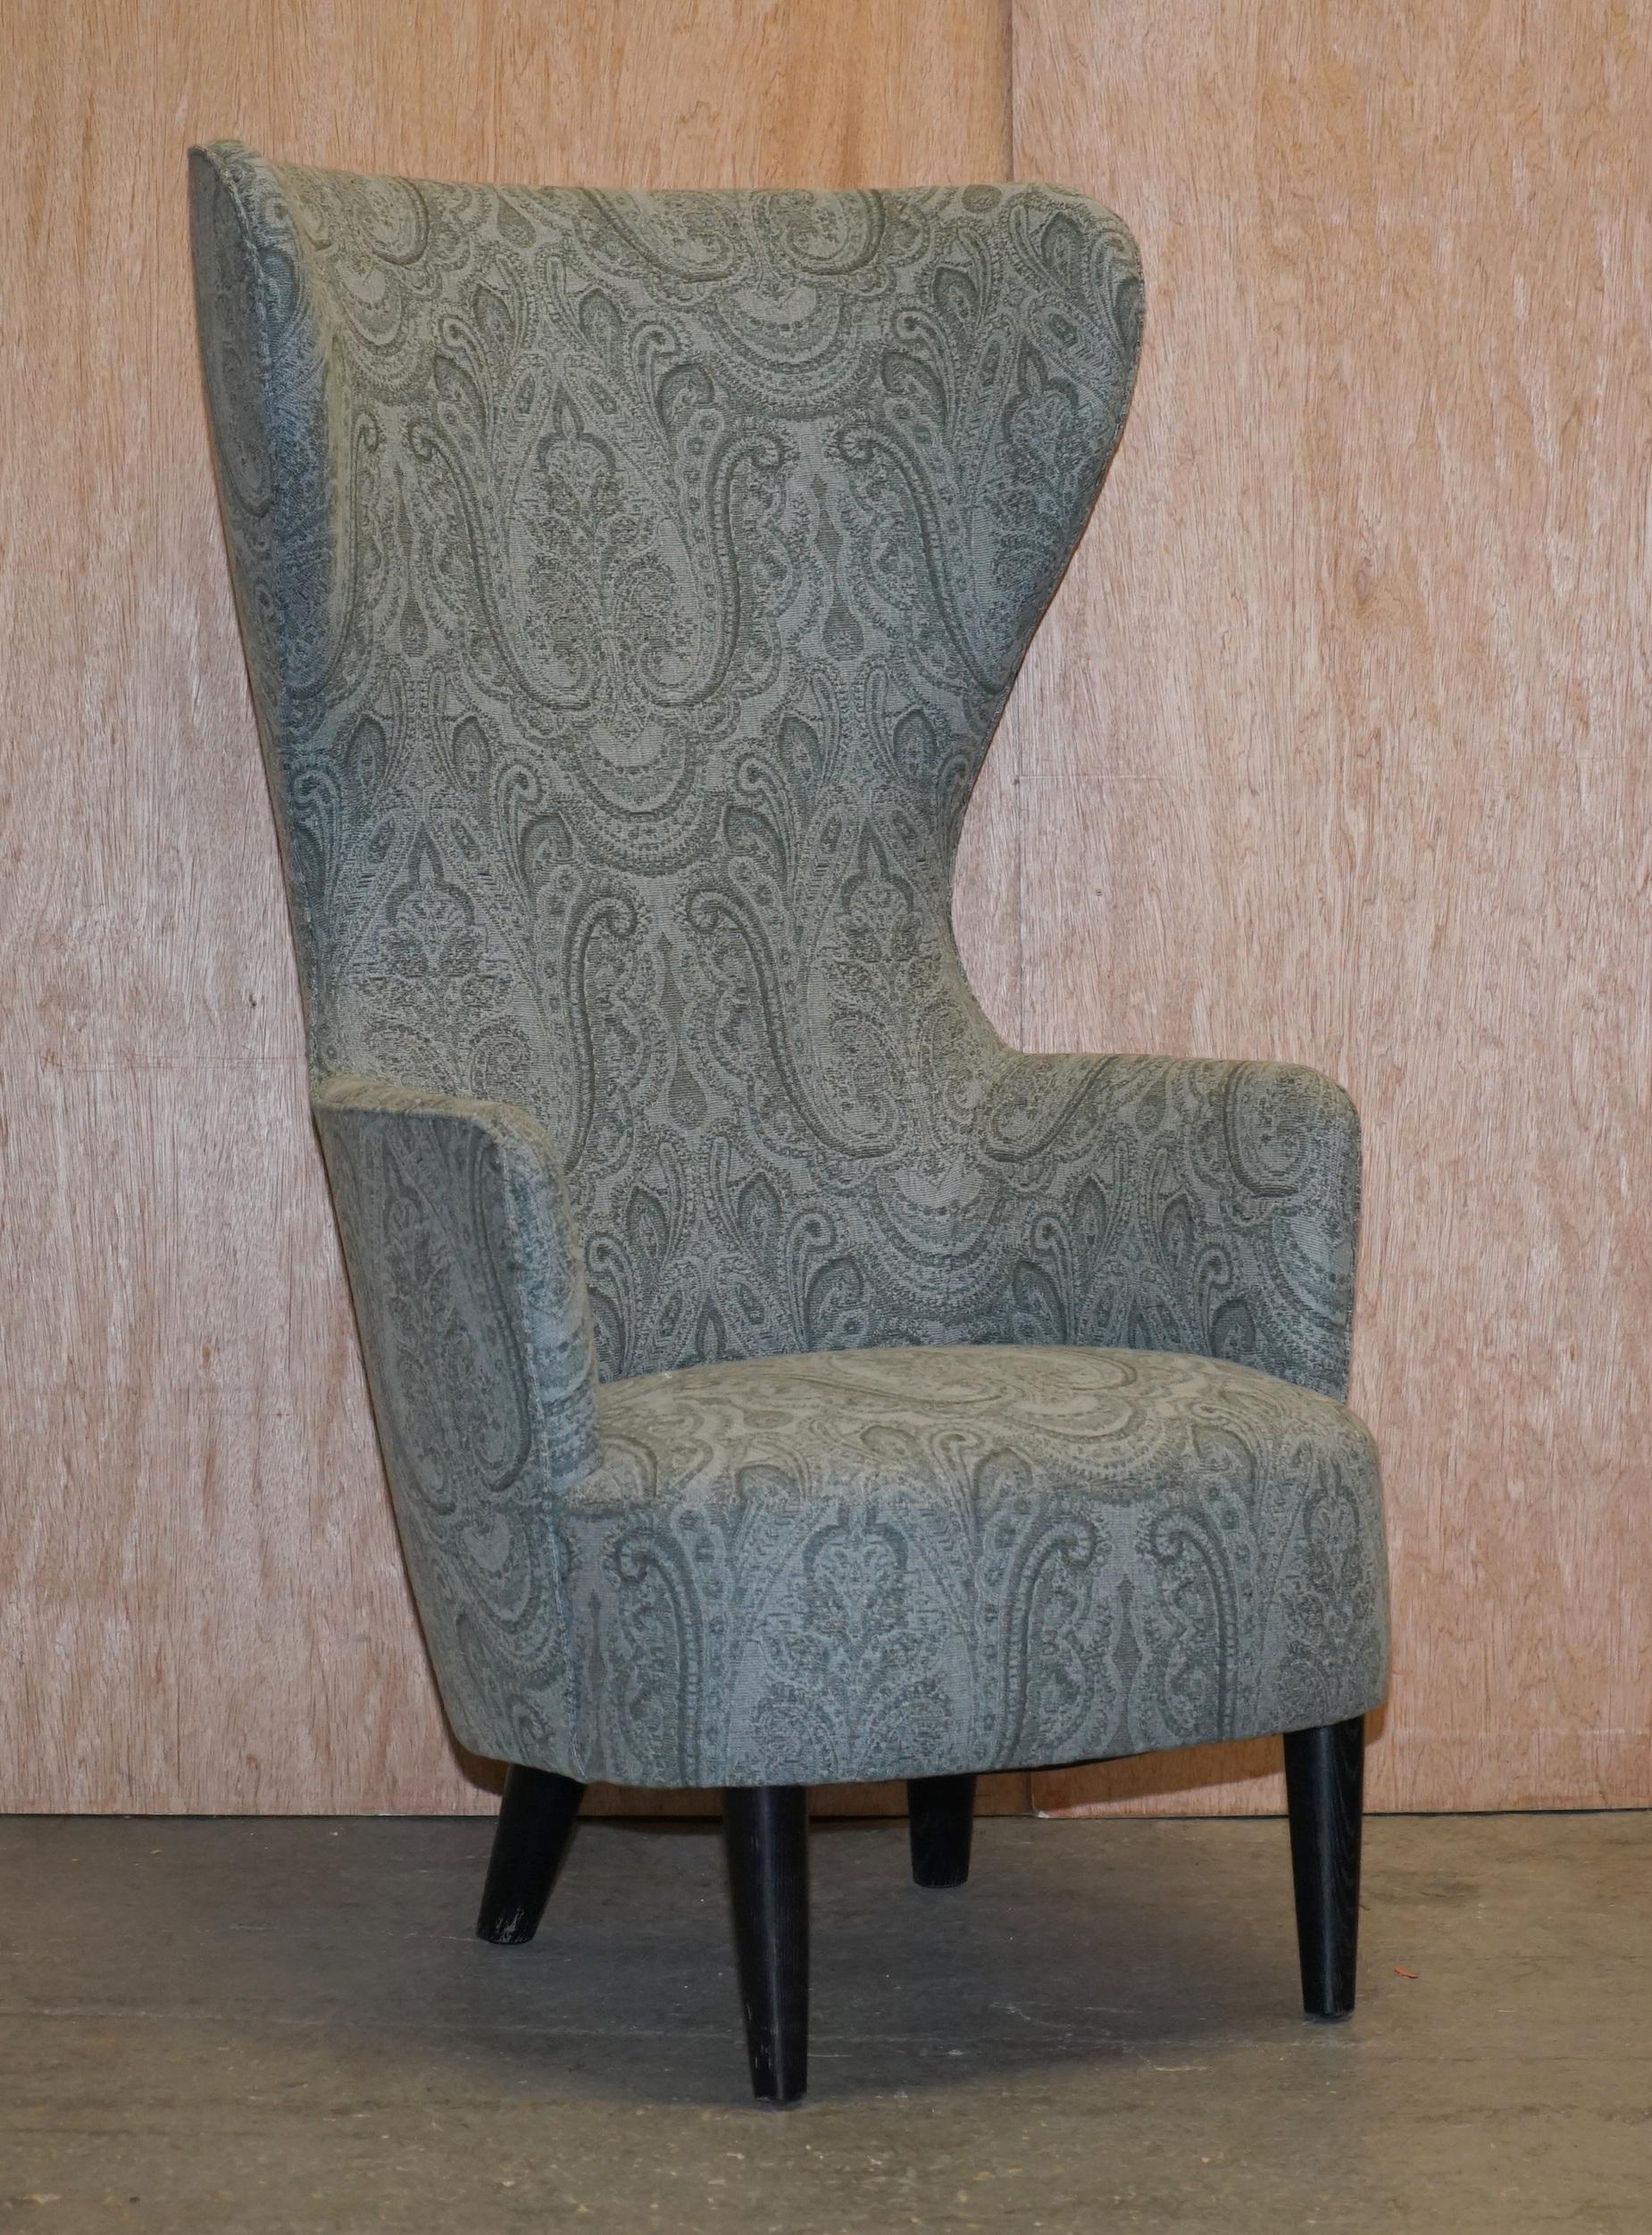 Nous avons le plaisir de proposer à la vente cette paire de fauteuils ailerons Tom Dixon George Smith, édition originale 2007, entièrement restaurés. Prix de vente conseillé : 16 000 £

Inspiré par les archétypes traditionnels du 17ème siècle,